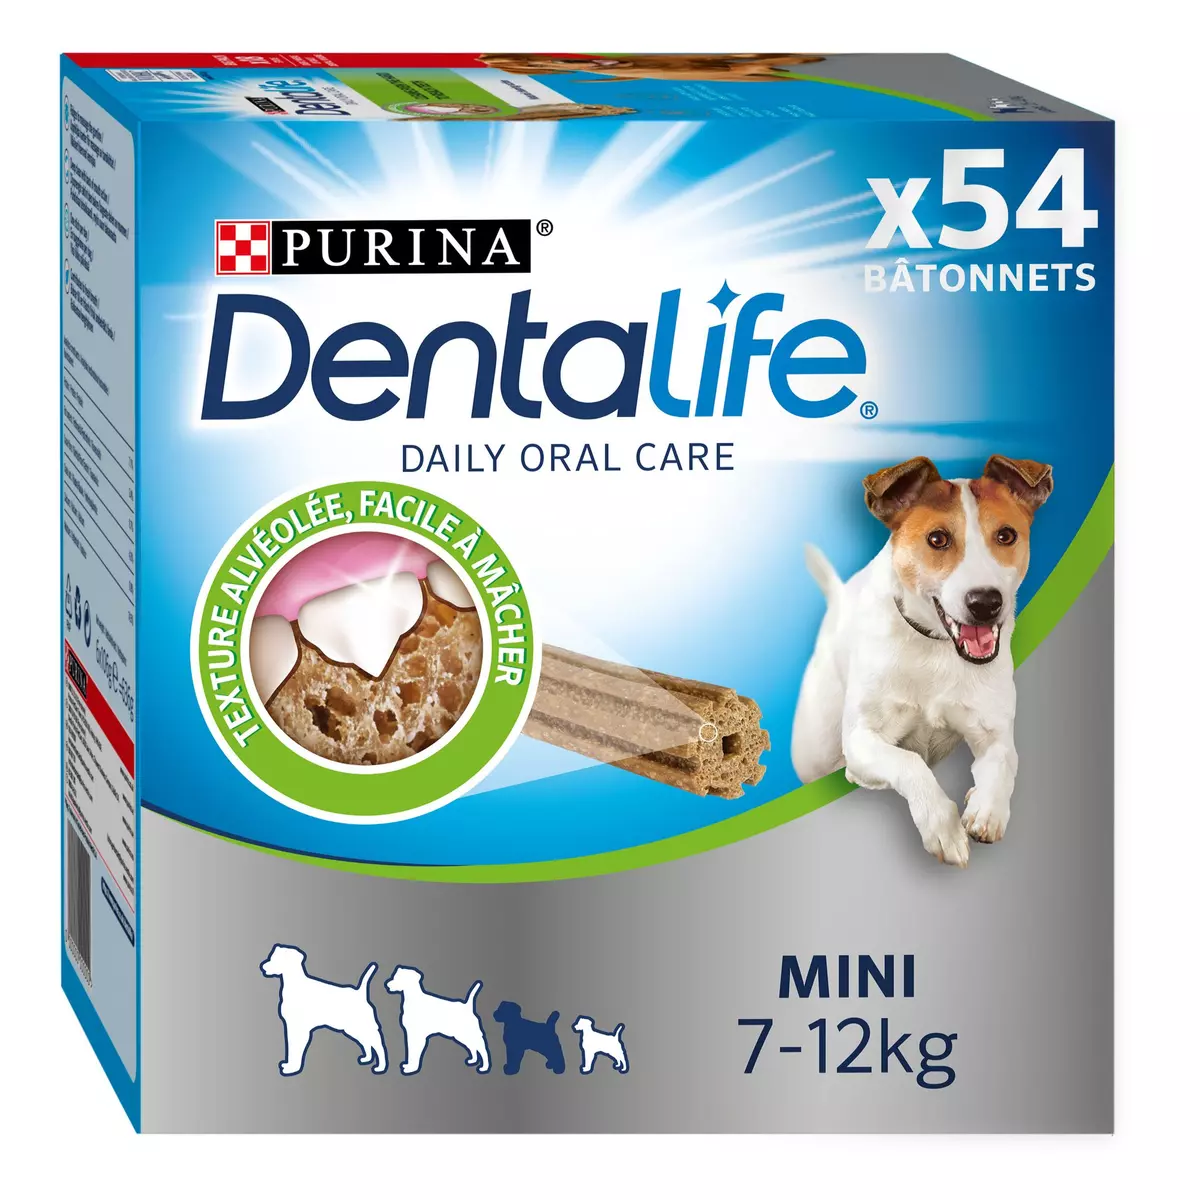 PURINA Dentalife friandises bâtonnets hygiène dentaire pour petit chien 54 bâtonnets 805g